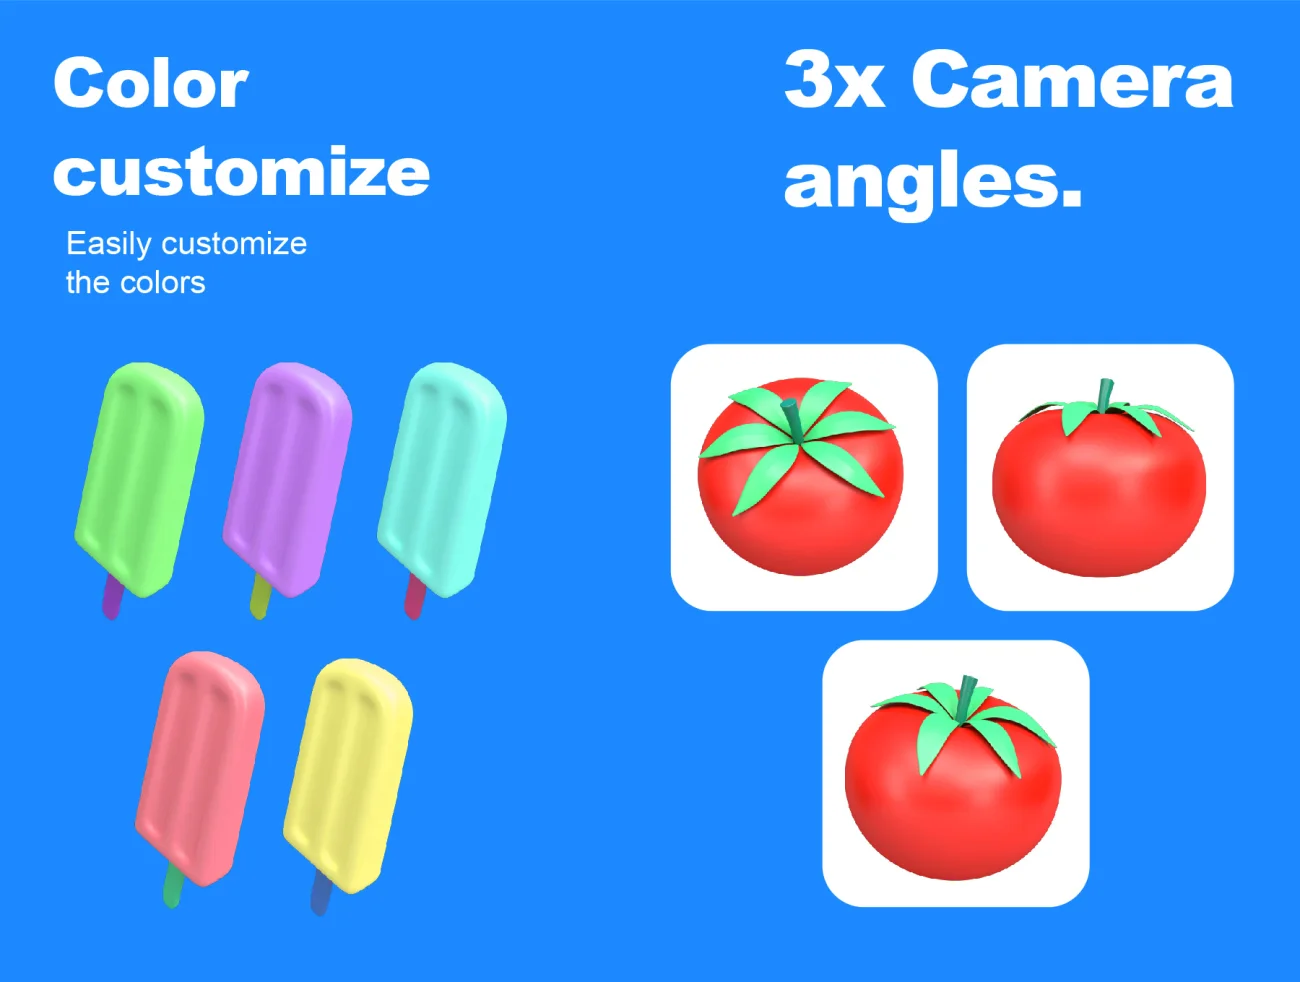 25屏蔬菜水果食品3D图标合集 Food 3D Icons set-3D/图标-到位啦UI